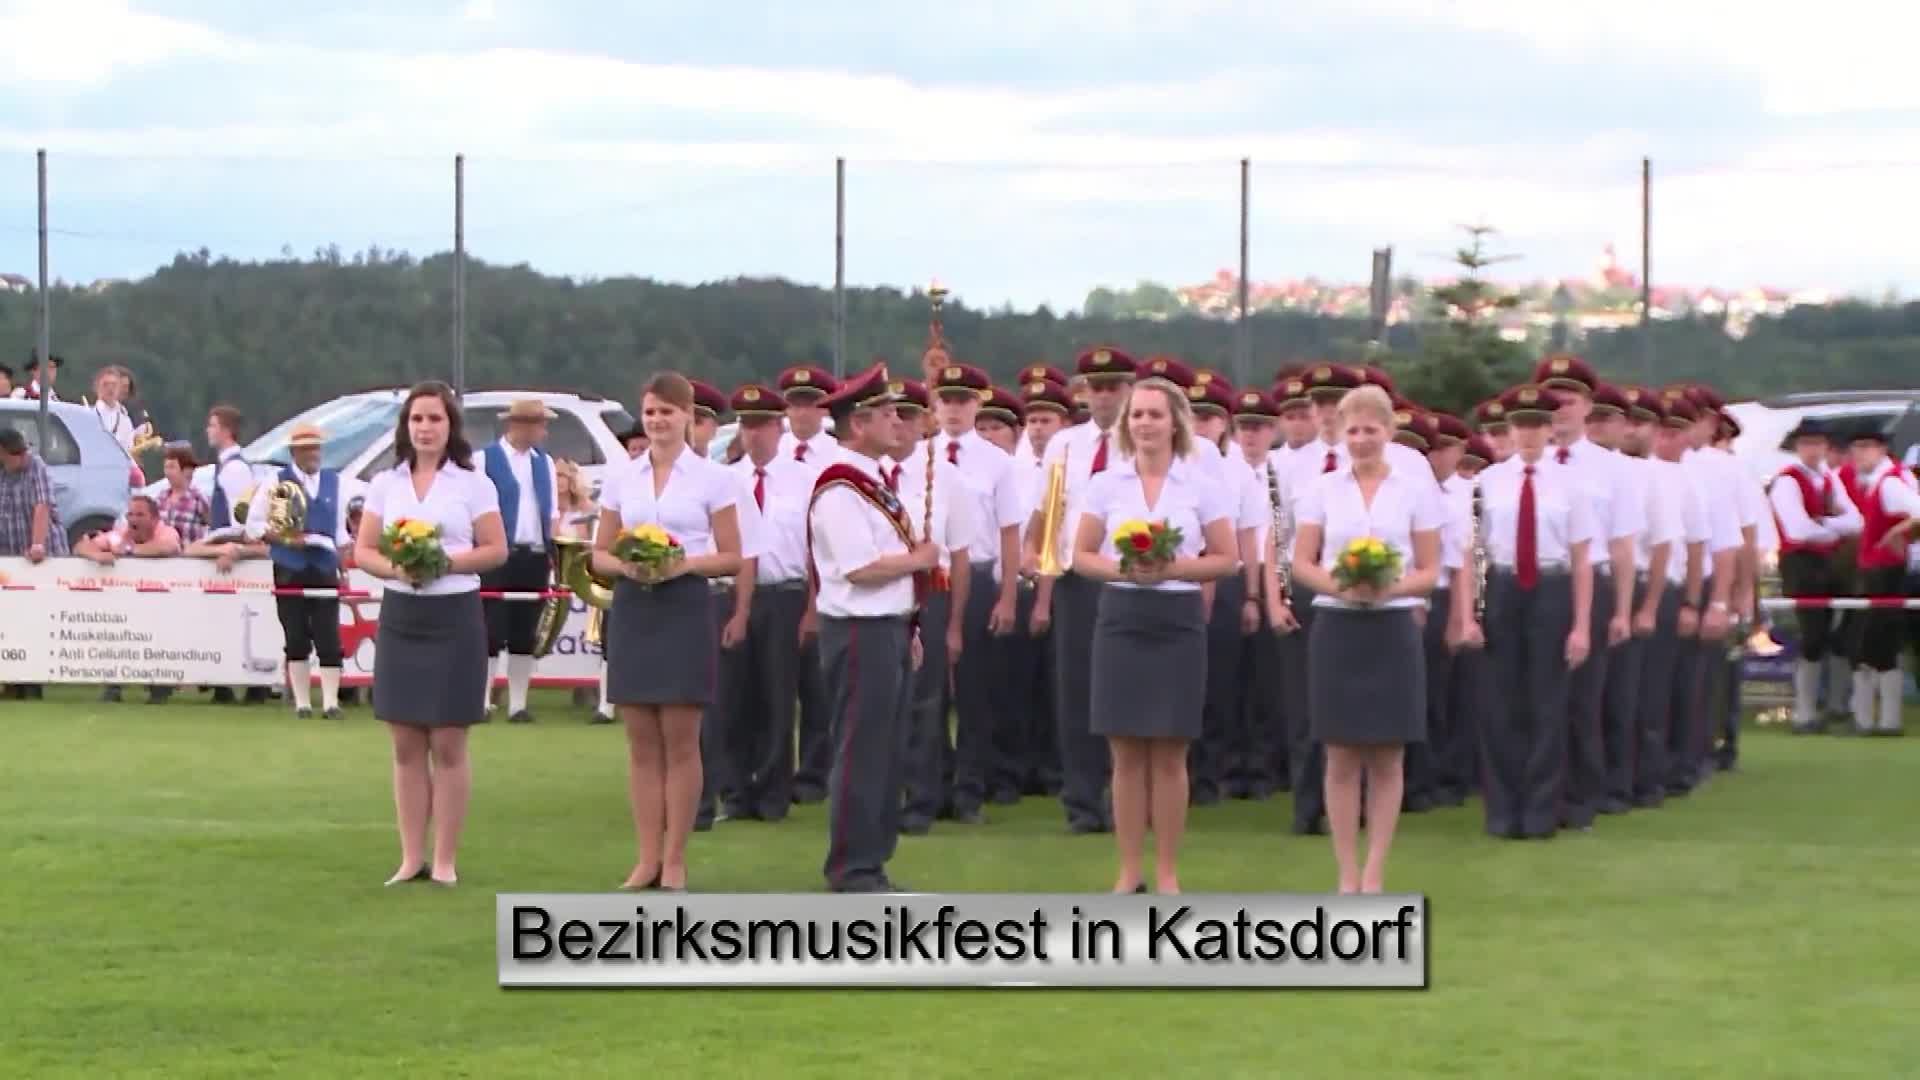 Bezirksmusikfest 2016 in Katsdorf